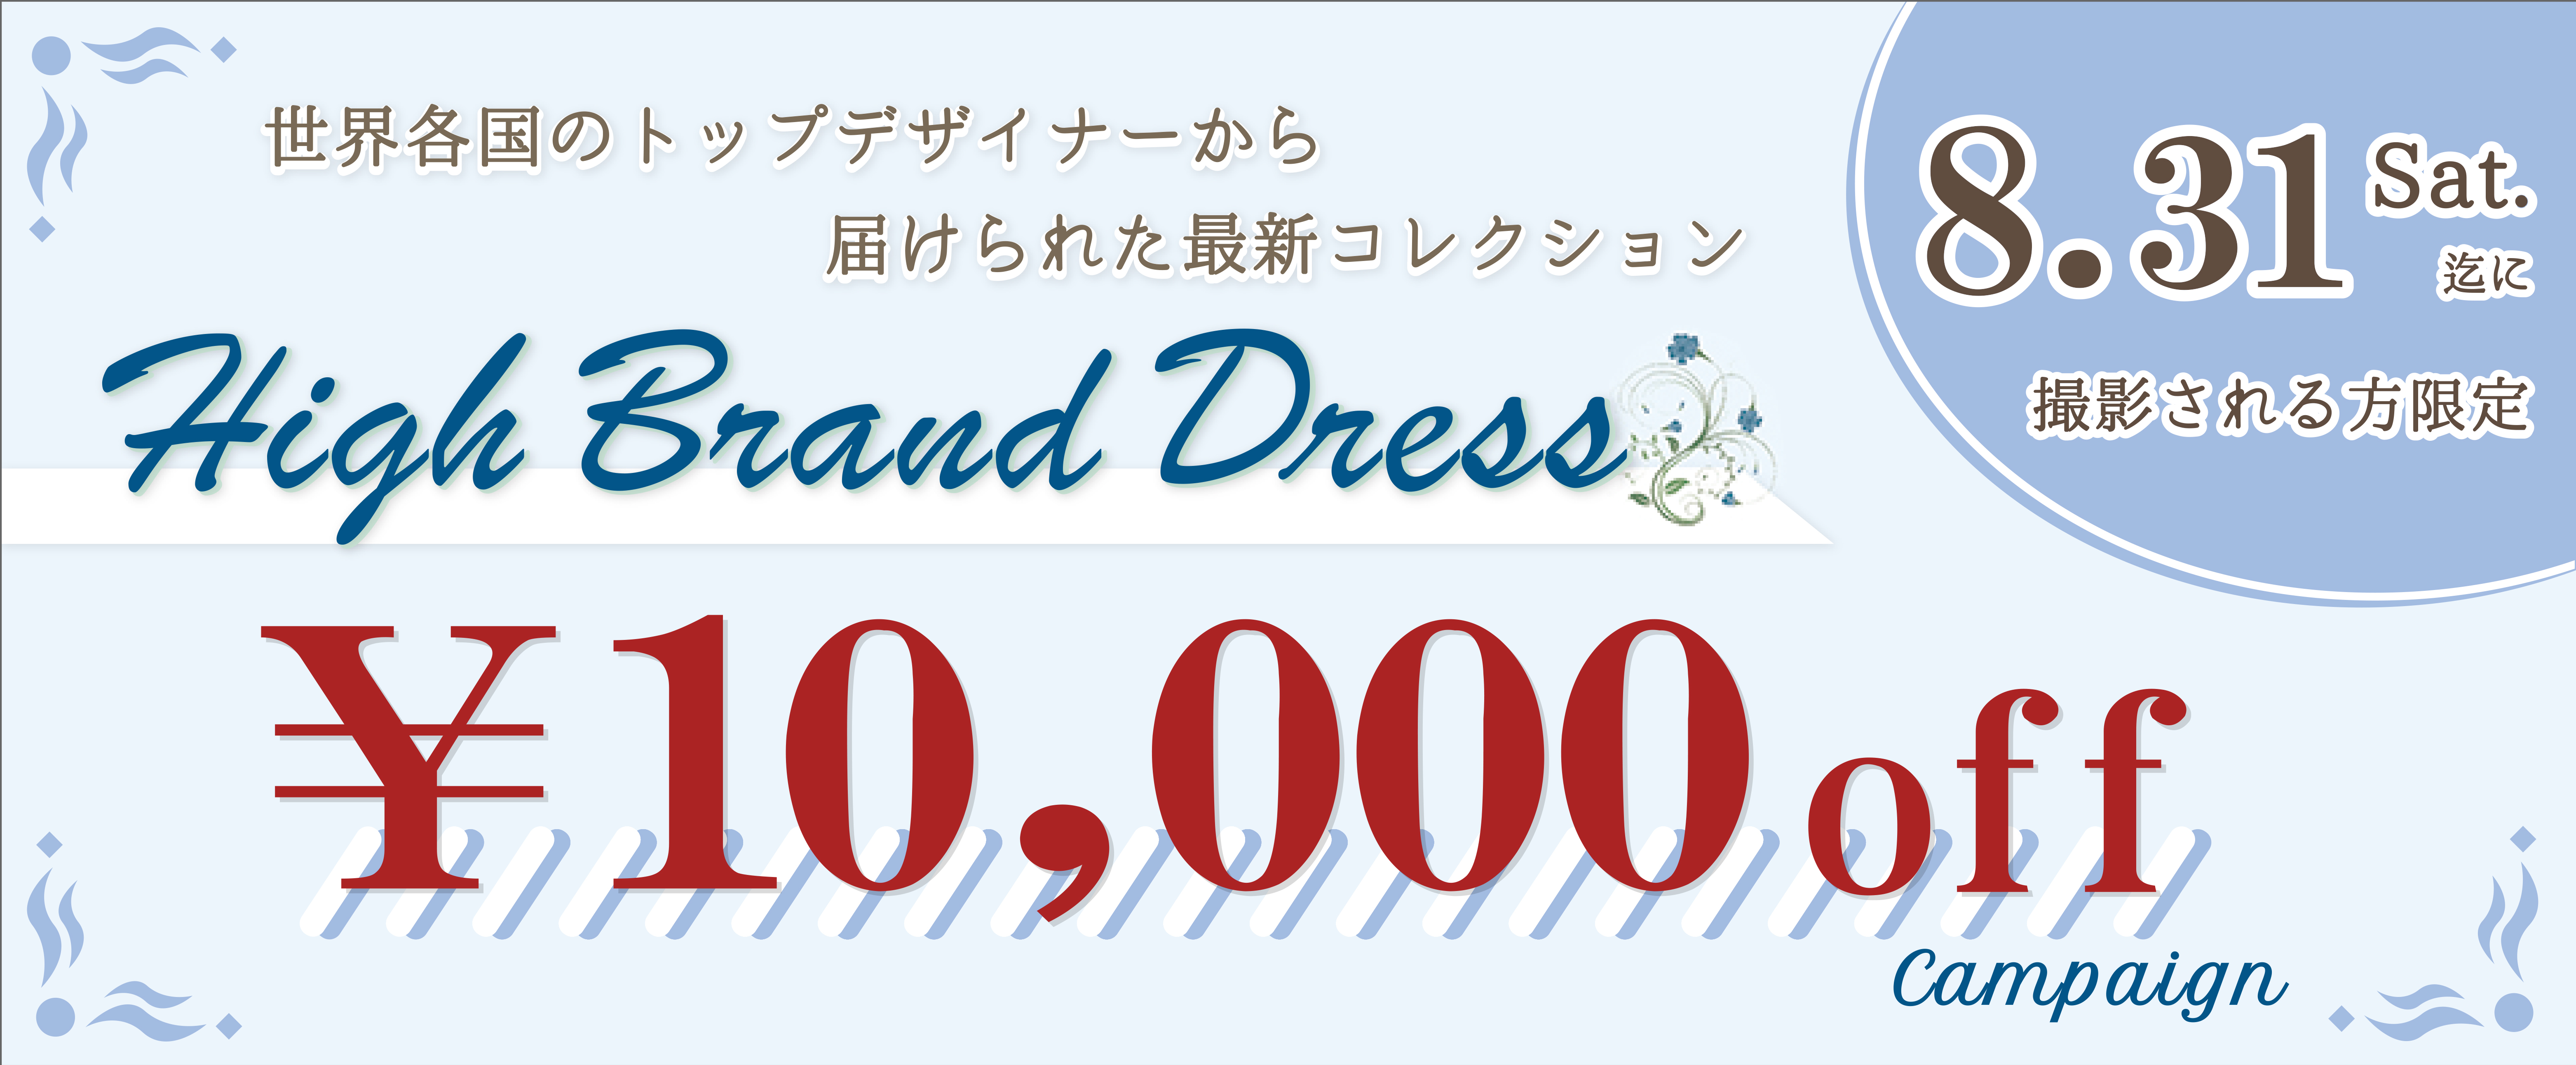 High Brand Dress 世界各国のトップデザイナーから届けられた最新コレクション